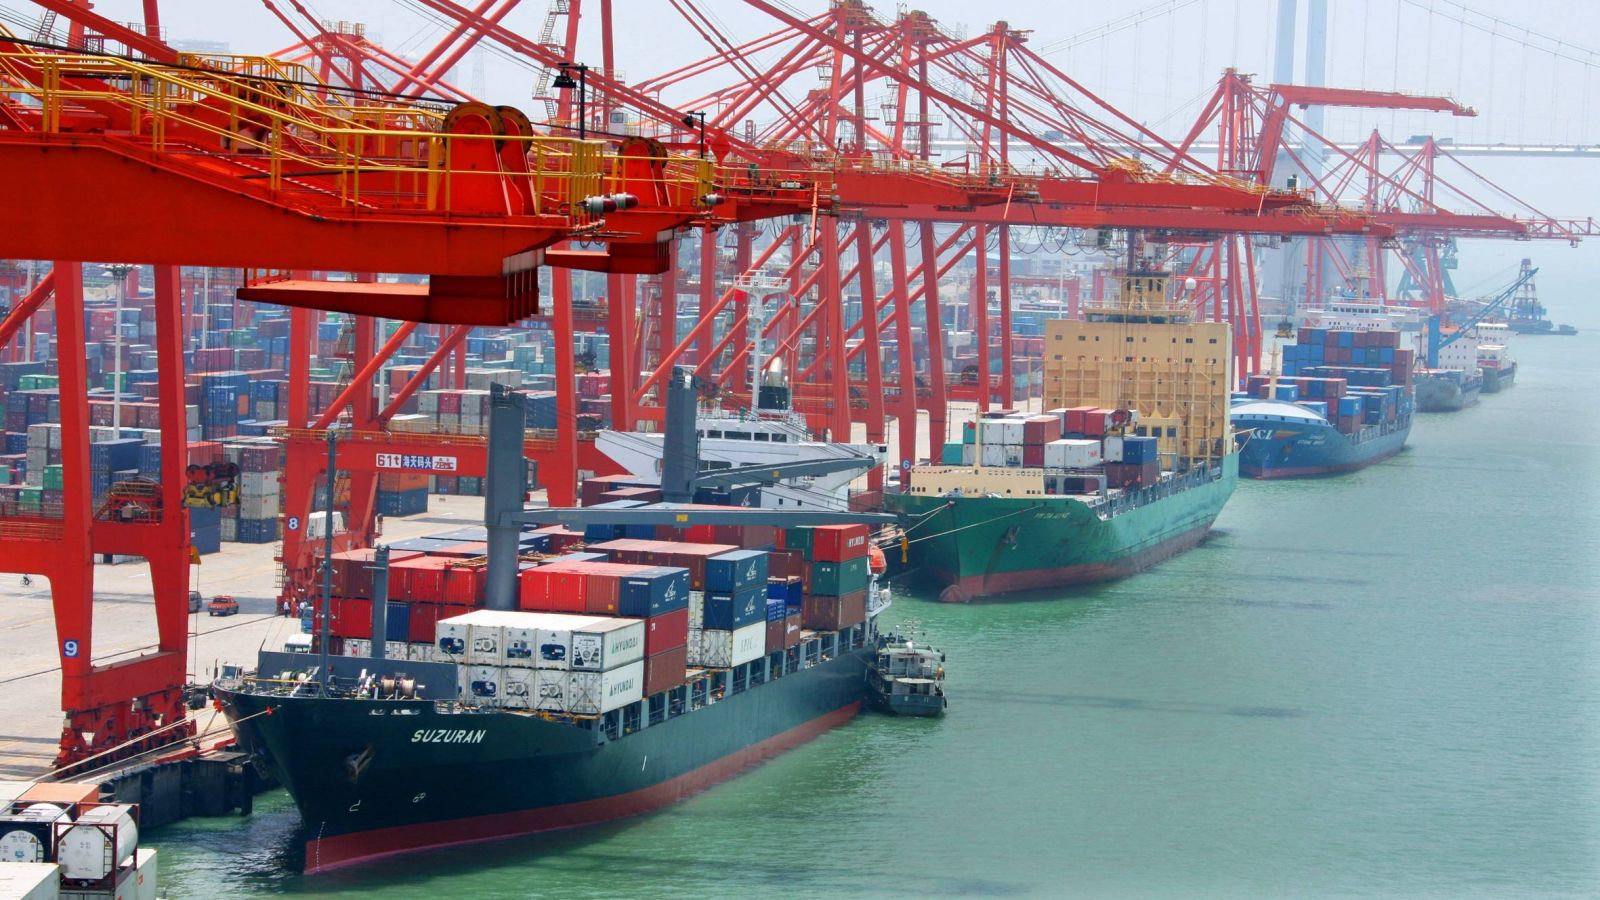  每年有多少外籍轮船造访中国港口?超过28万艘次